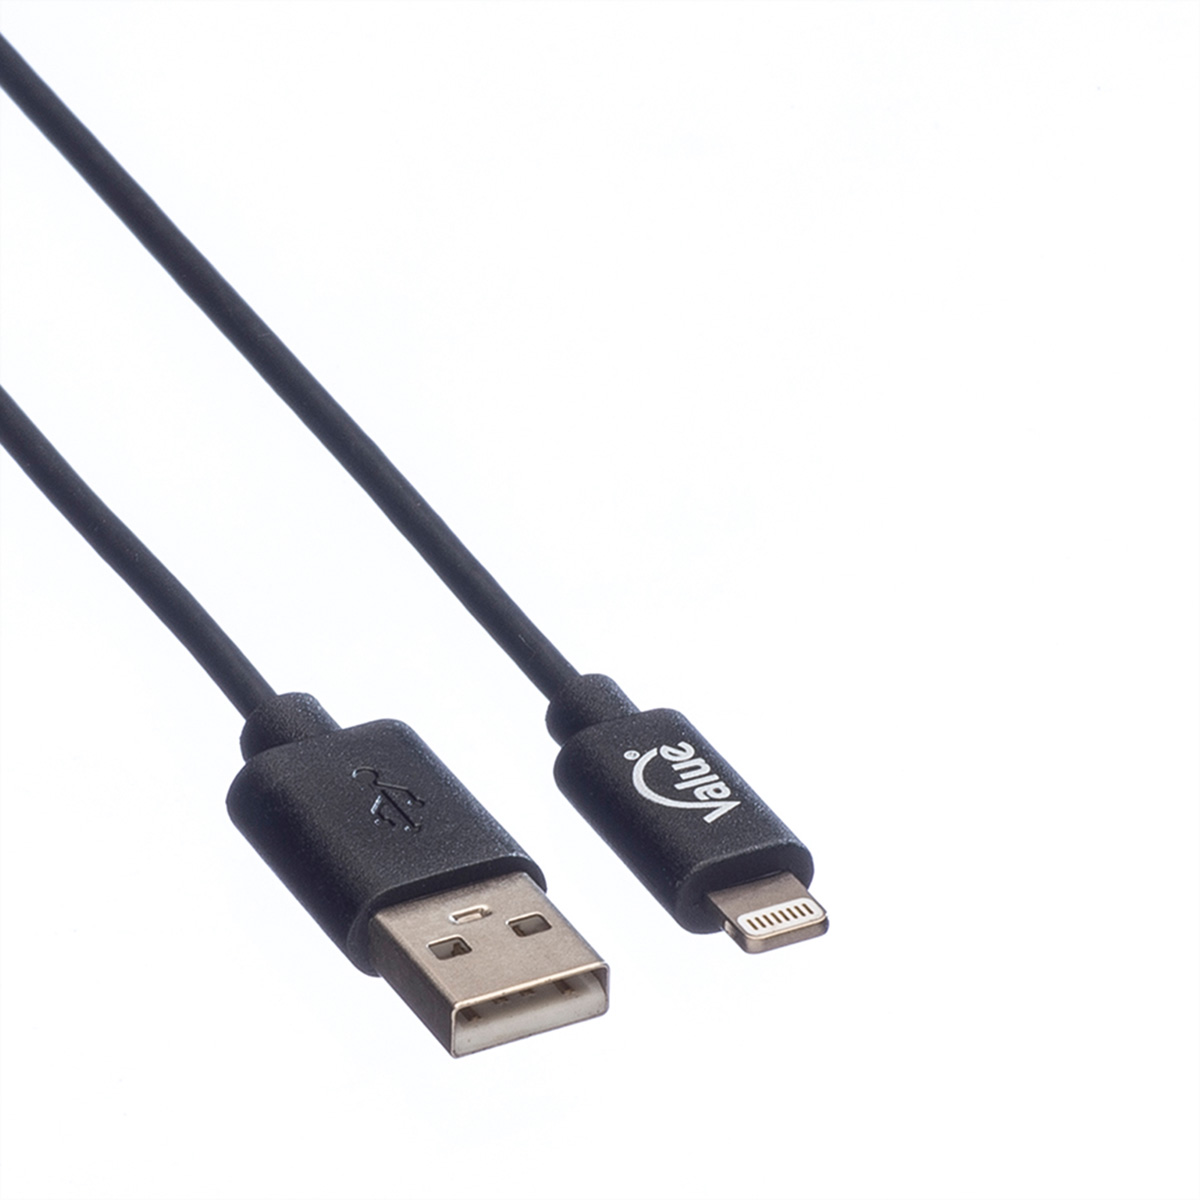 VALUE & Connector Kabel 2.0 Lightning Connector Sync- Ladekabel USB mit Lightning